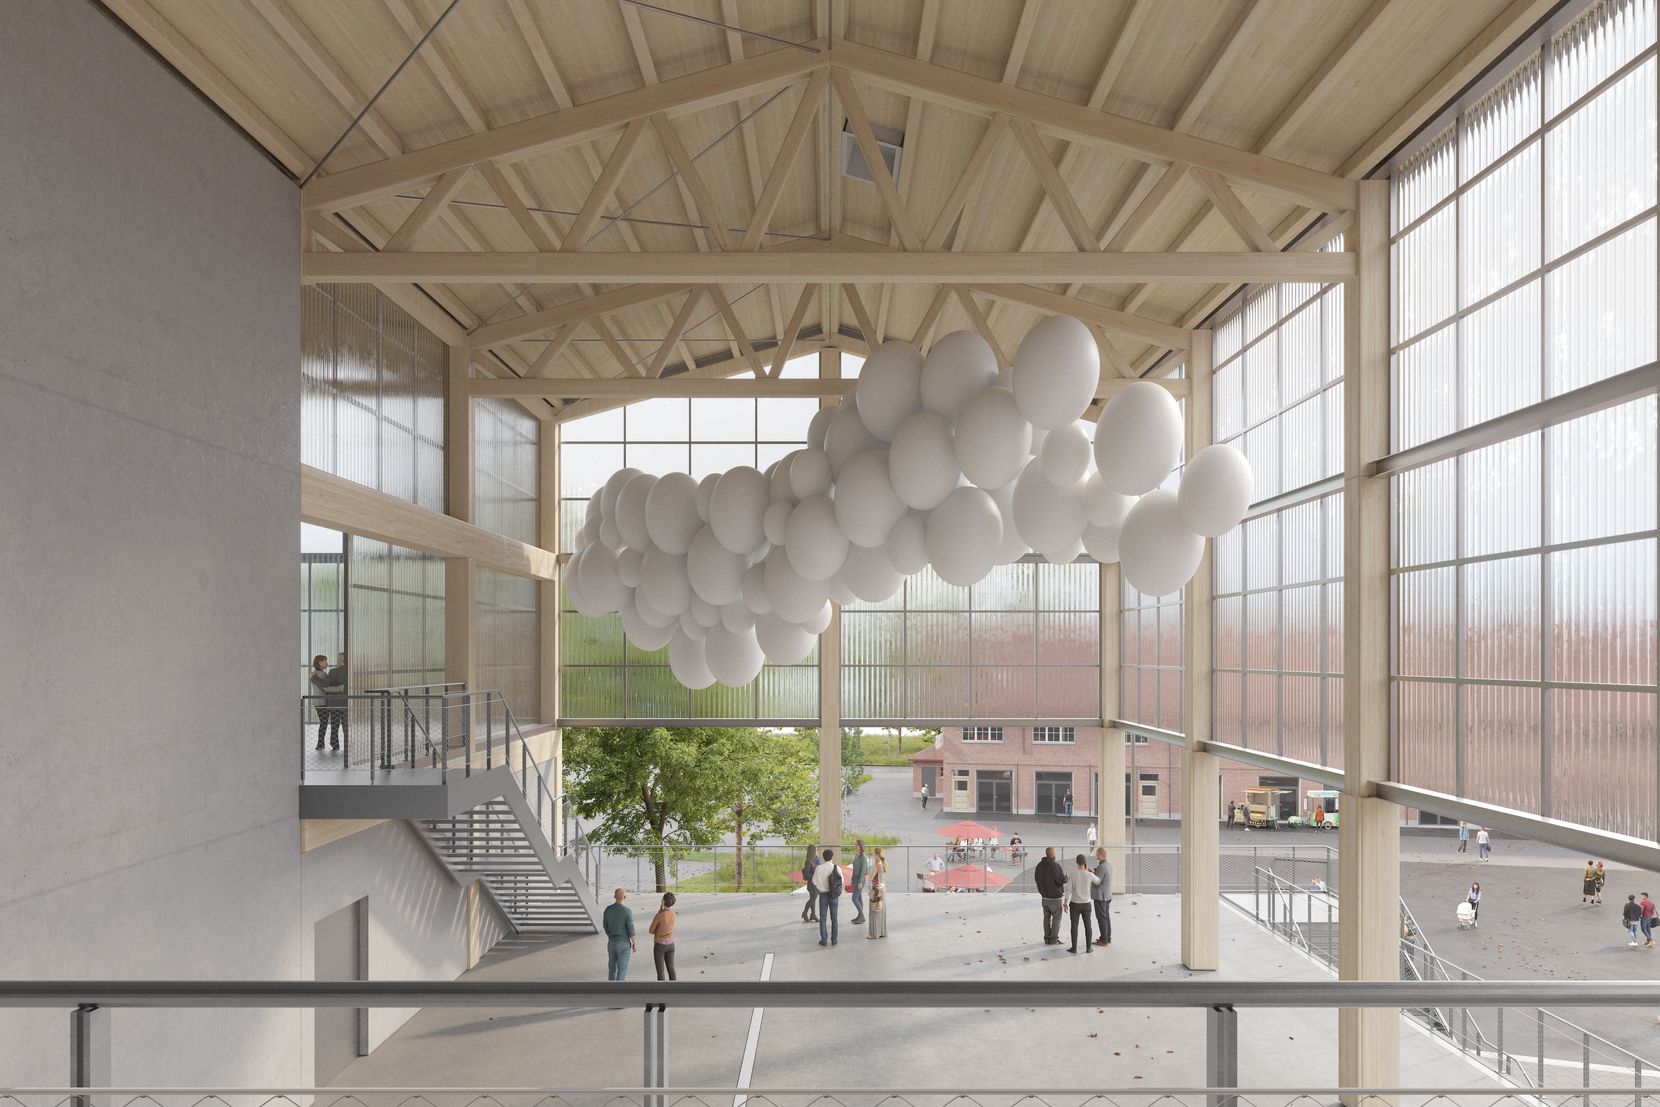 Bild einer lichtdurchfluteten Halle mit grossen Fenstern und weissen Luftballonen drin.